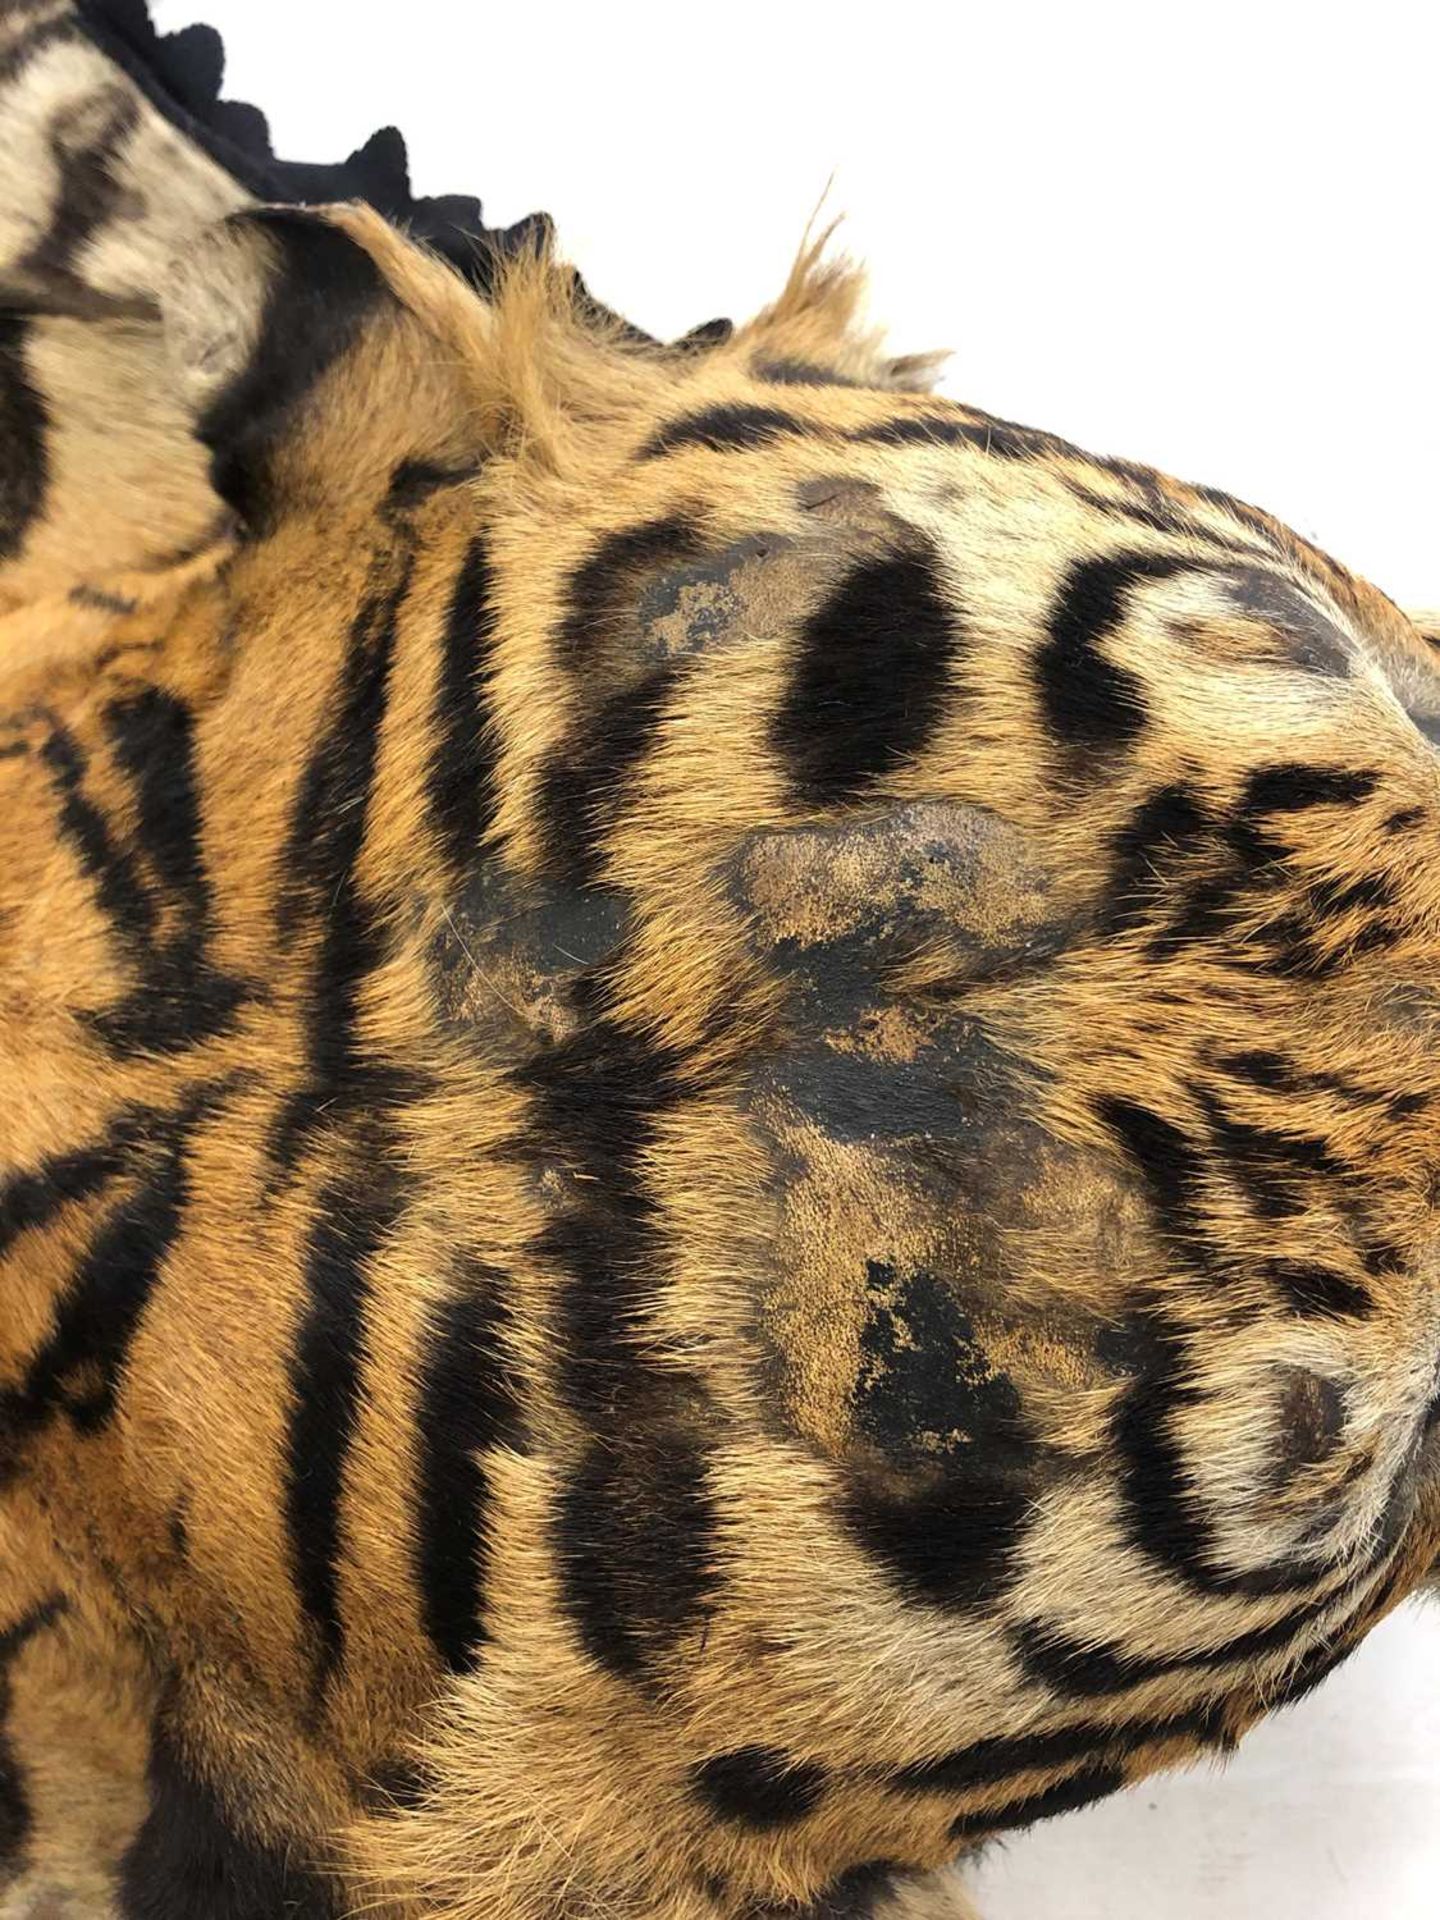 Taxidermy: A taxidermy tiger skin rug by Rowland Ward - Image 4 of 26